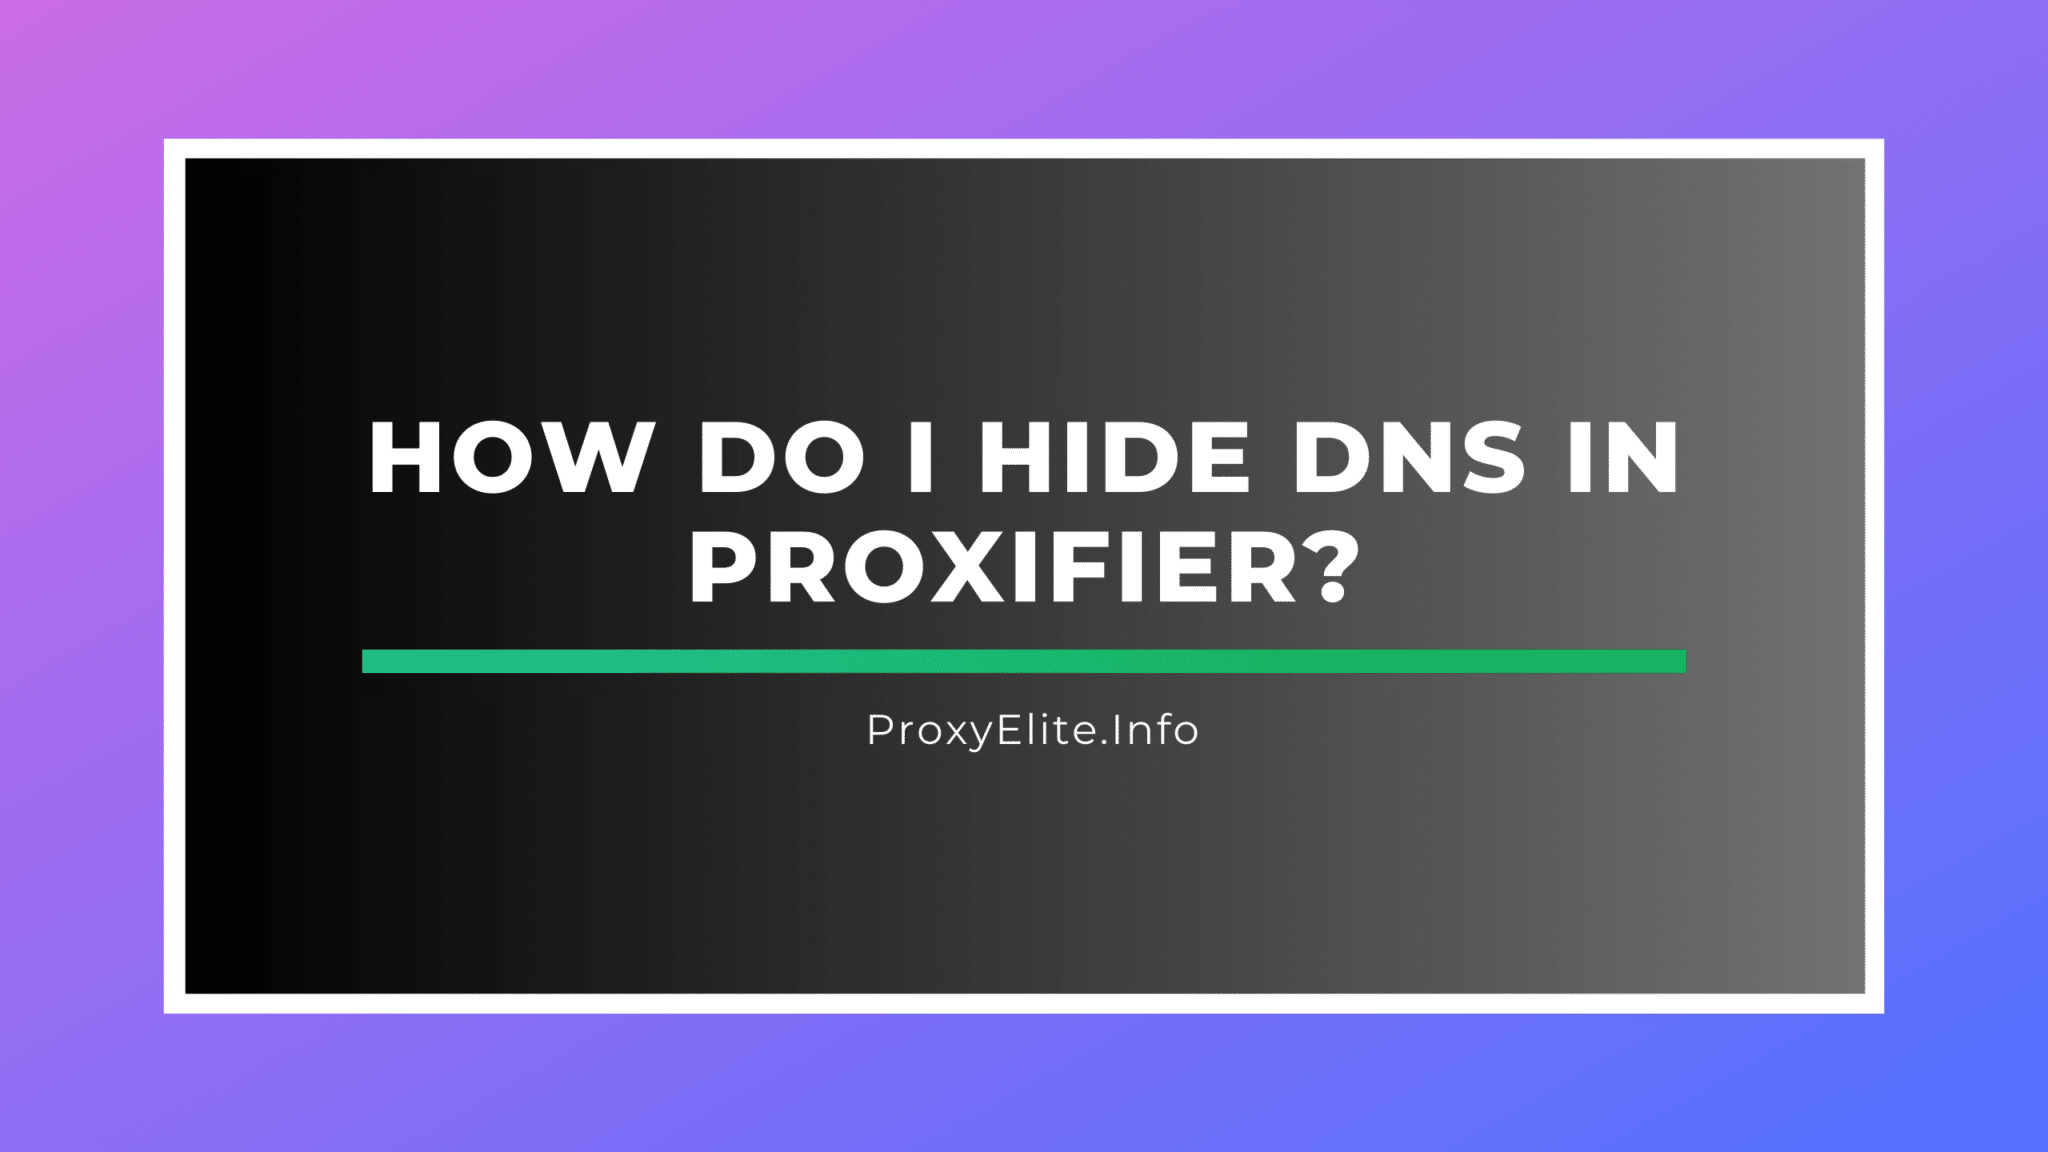 Làm cách nào để ẩn dns trong Proxifier?